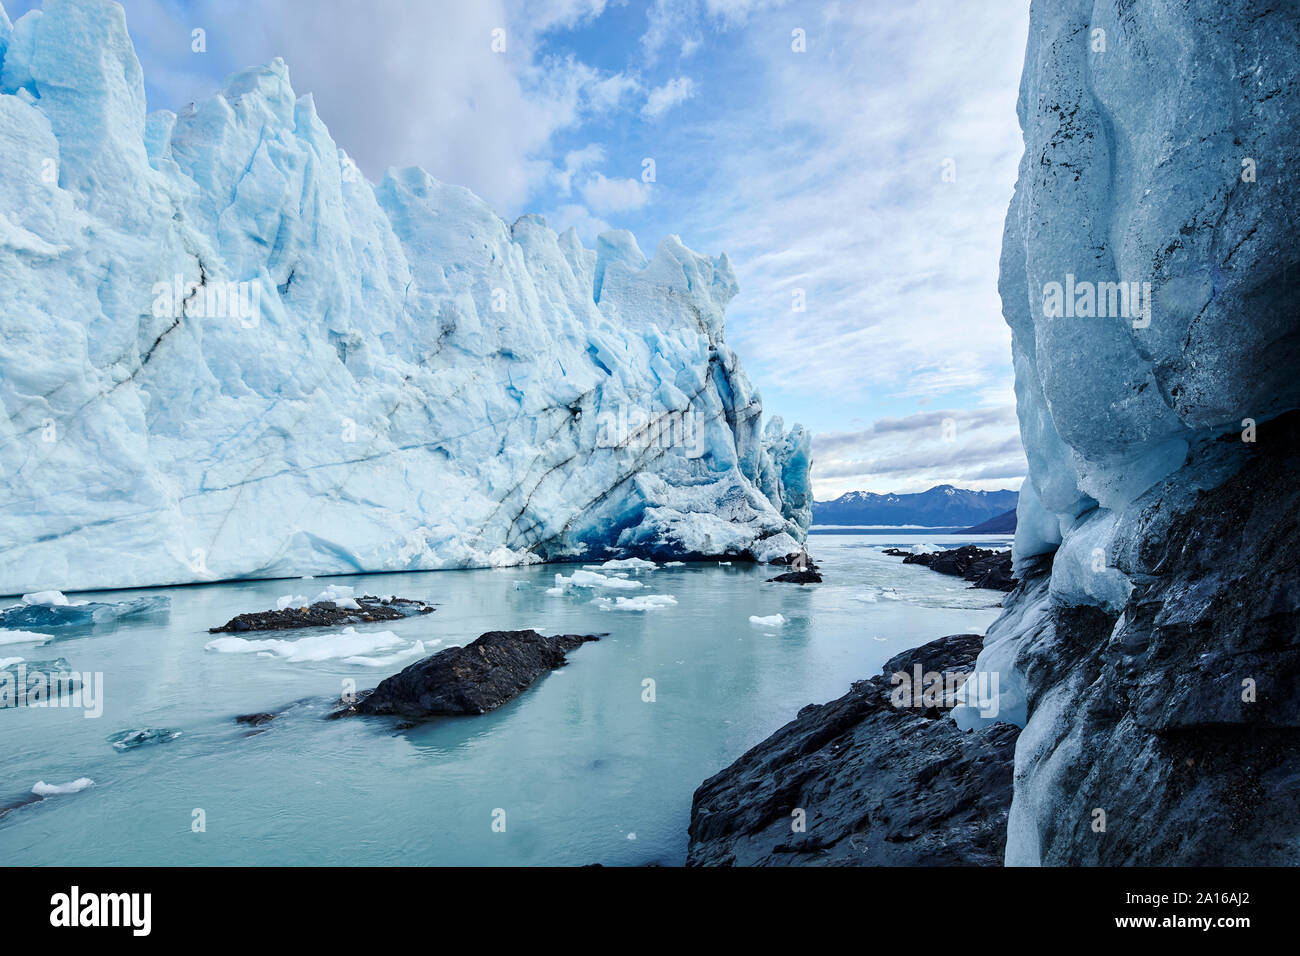 Front of Perito Moreno Glacier, Canal de los Tempanos, Los Glaciares National Park, Patagonia, Argentina Stock Photo